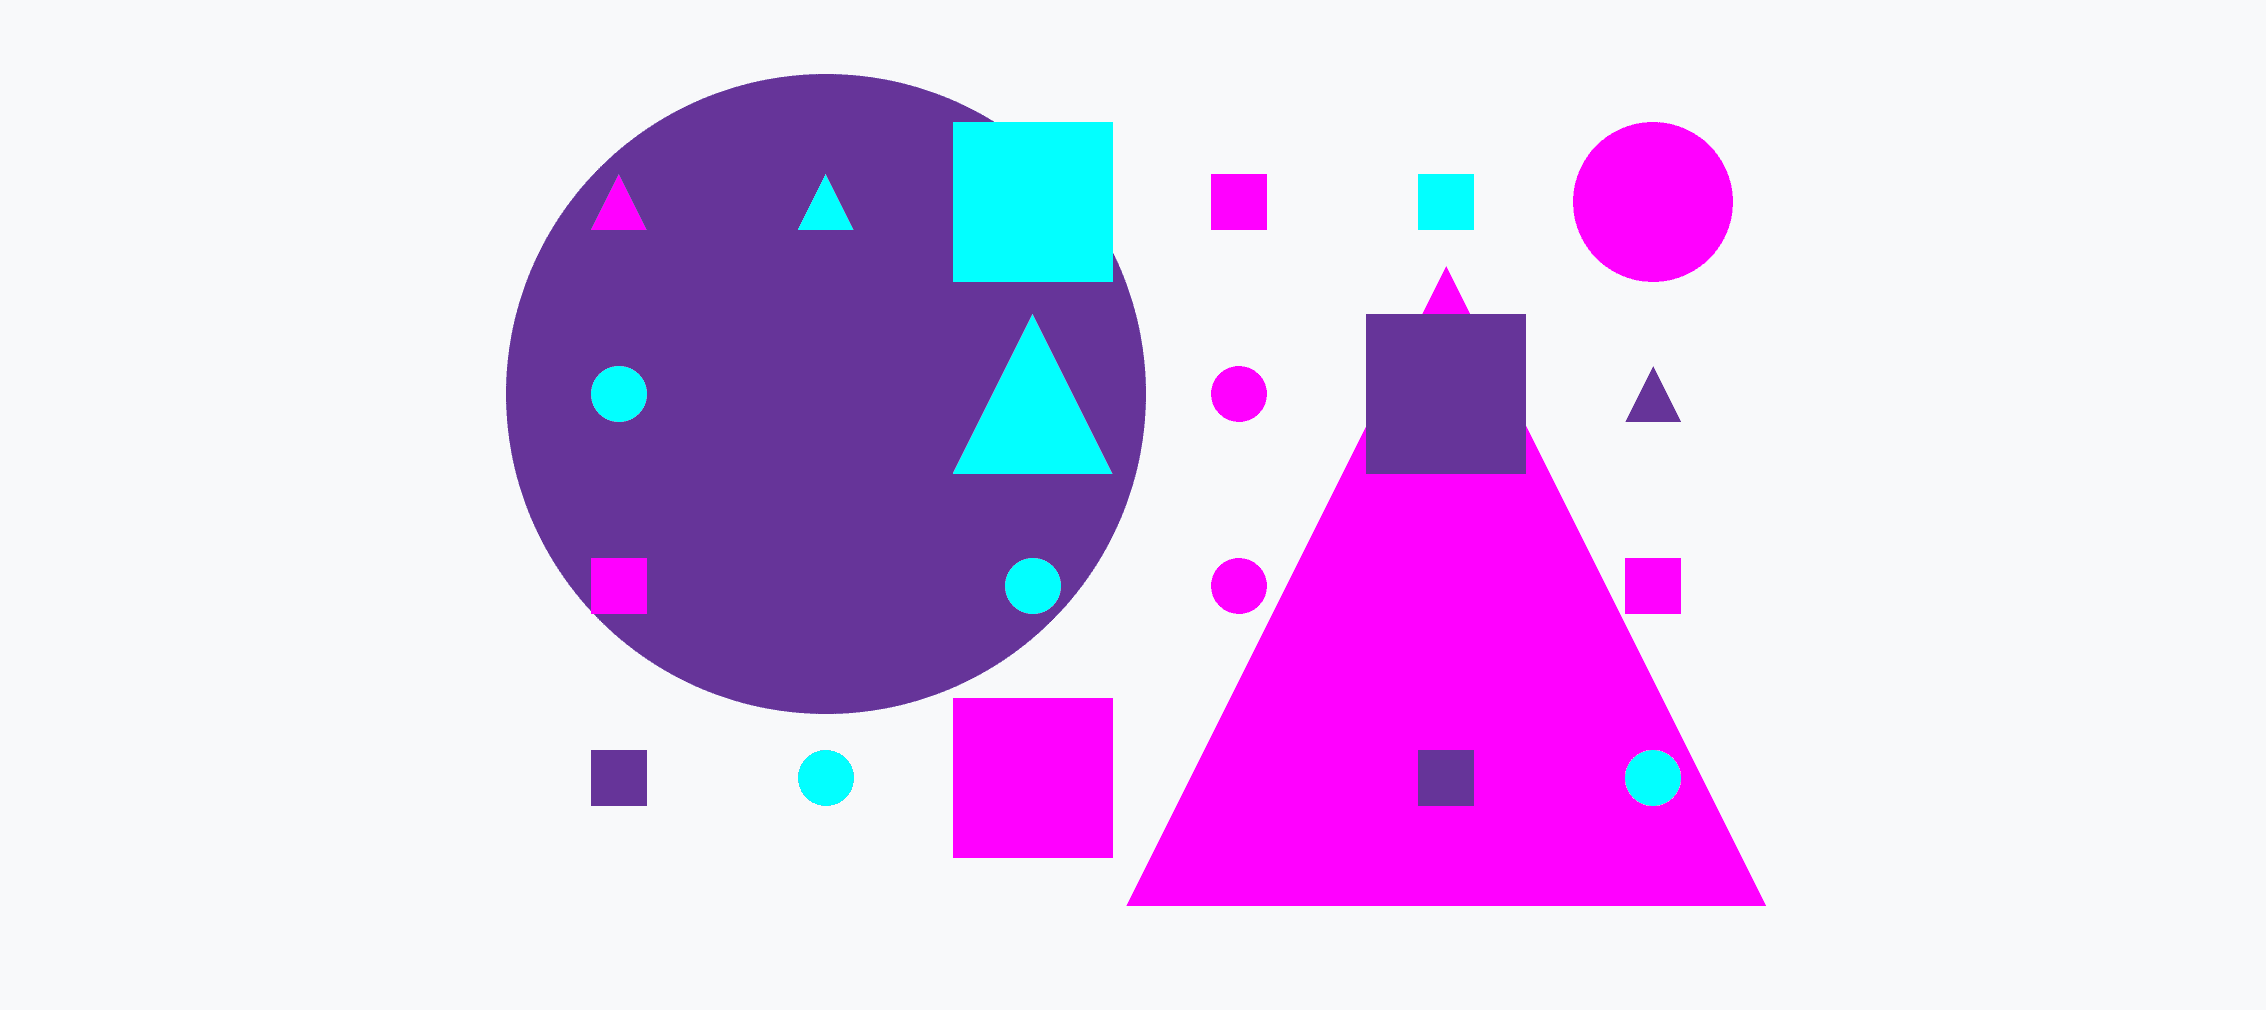 Kolorowa siatka małych i dużych okręgów, trójkątów i kwadratów.